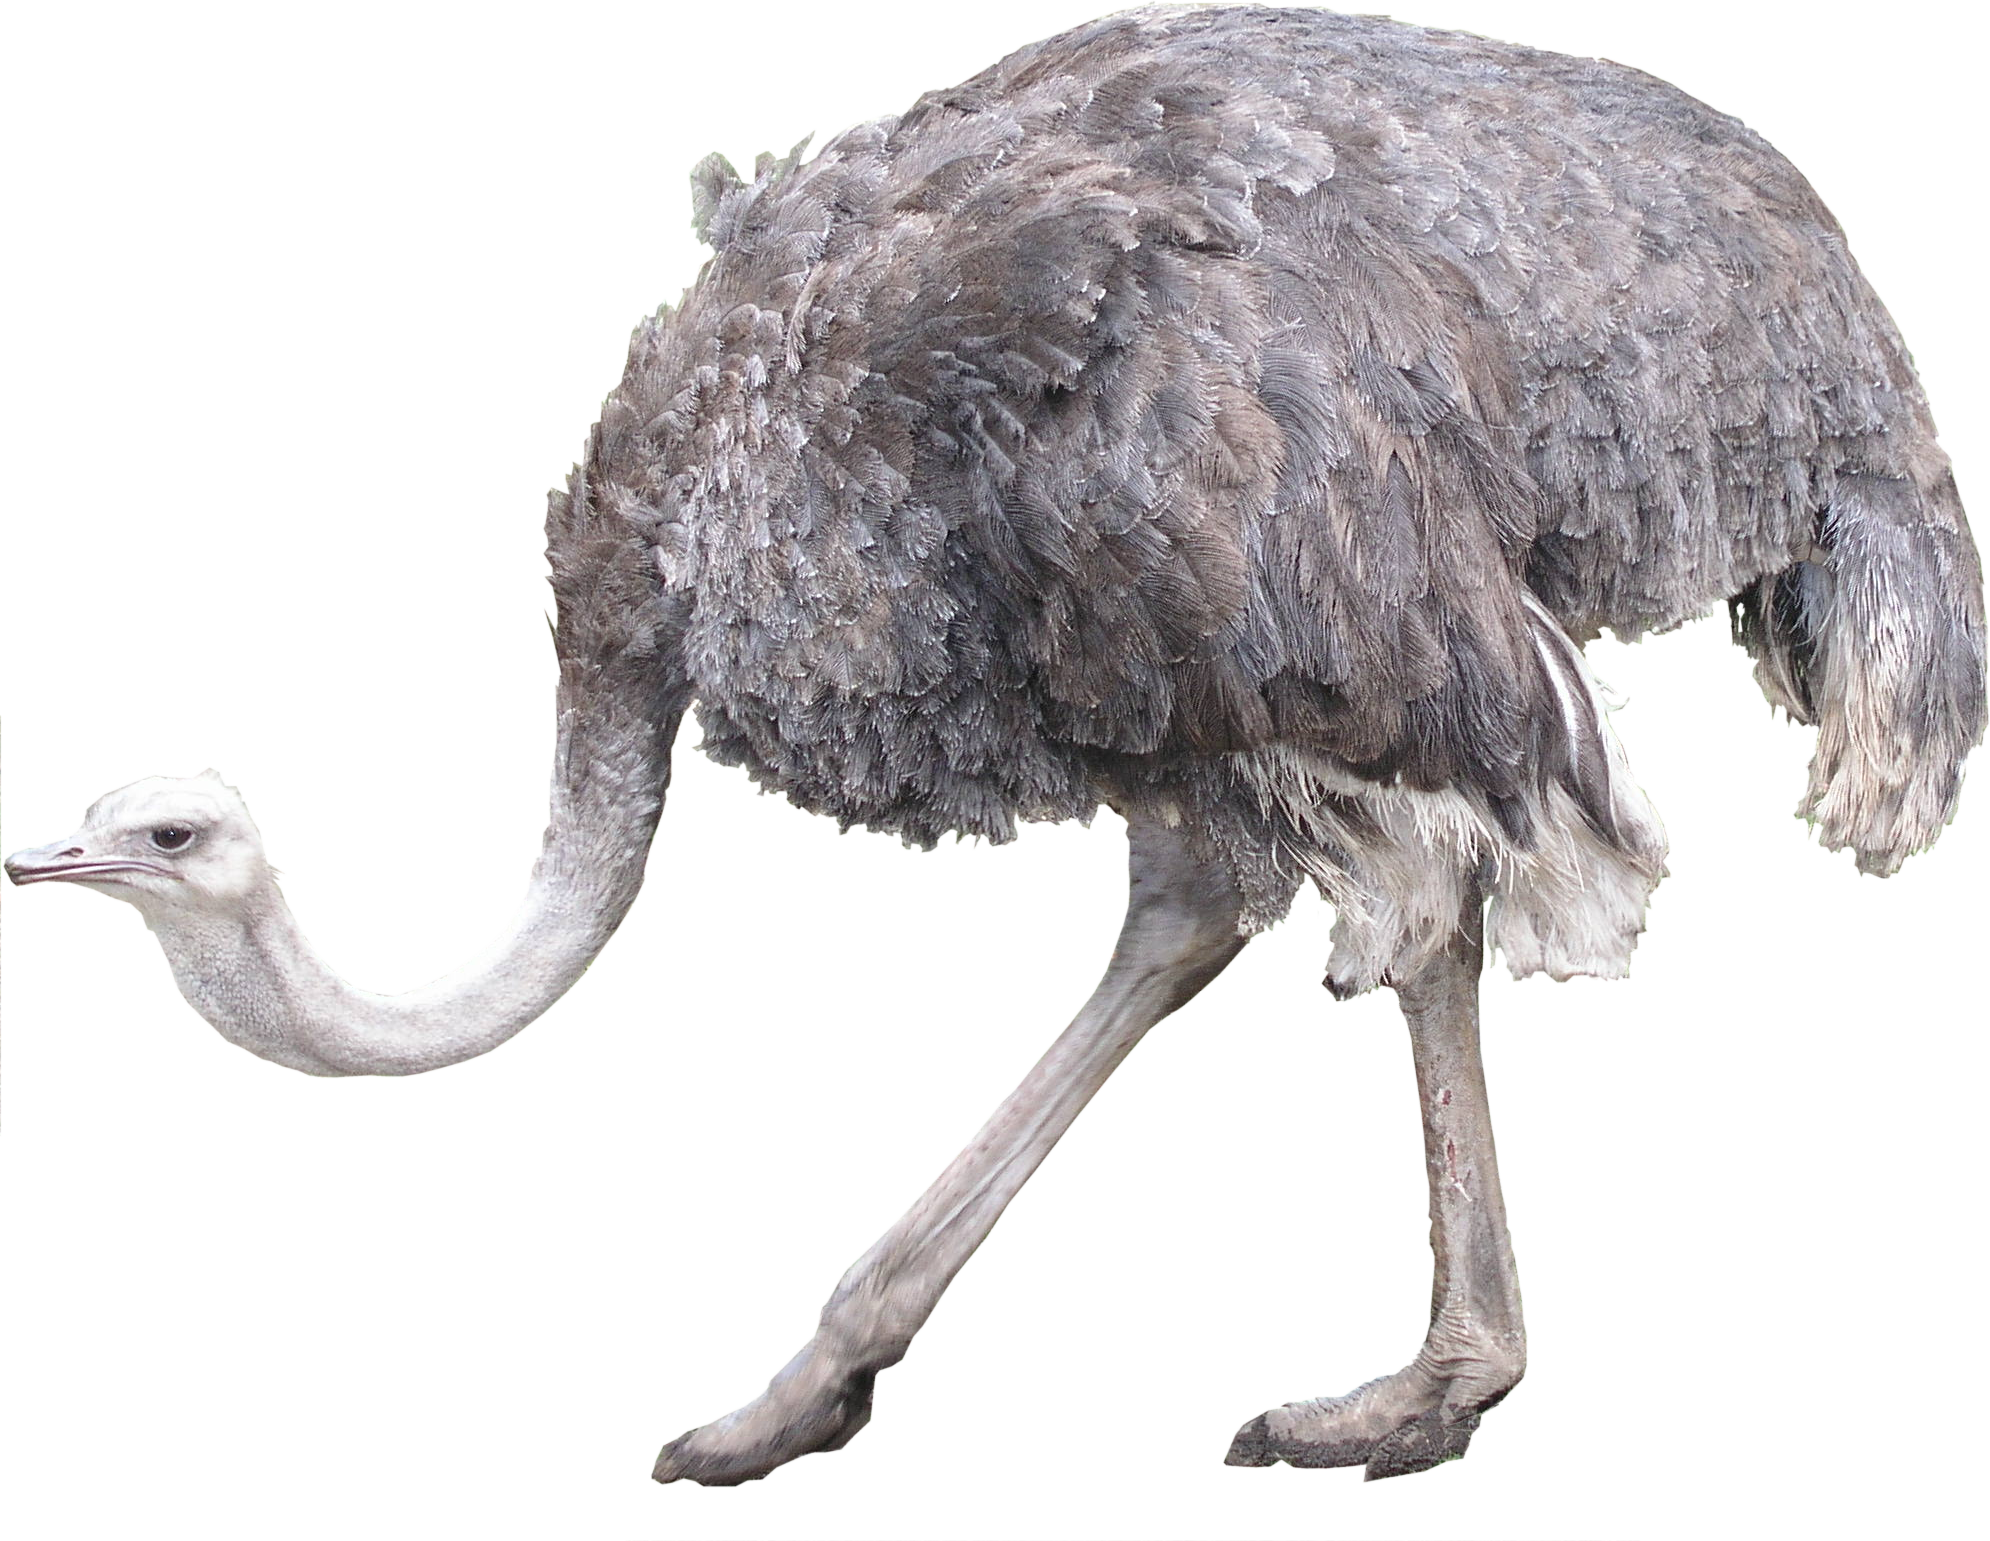 A Close Up Of An Ostrich